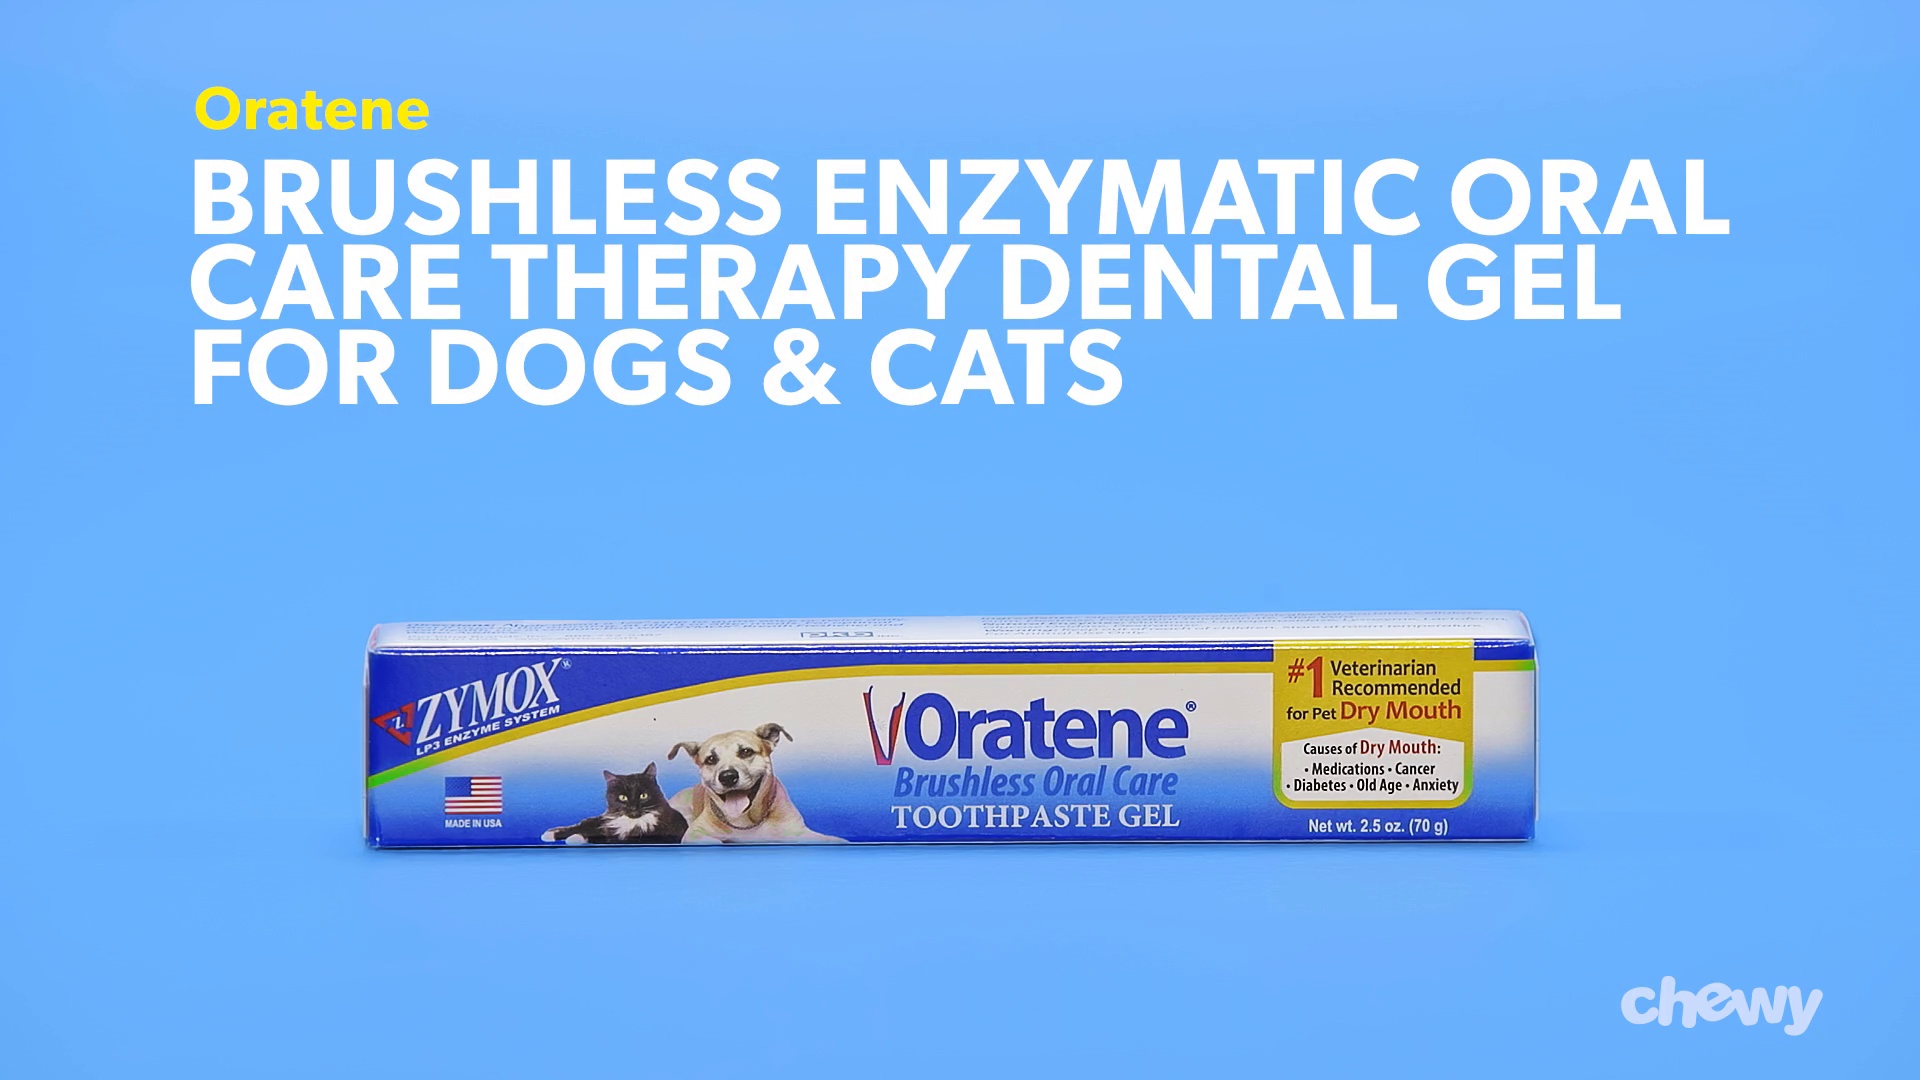 zymox toothpaste